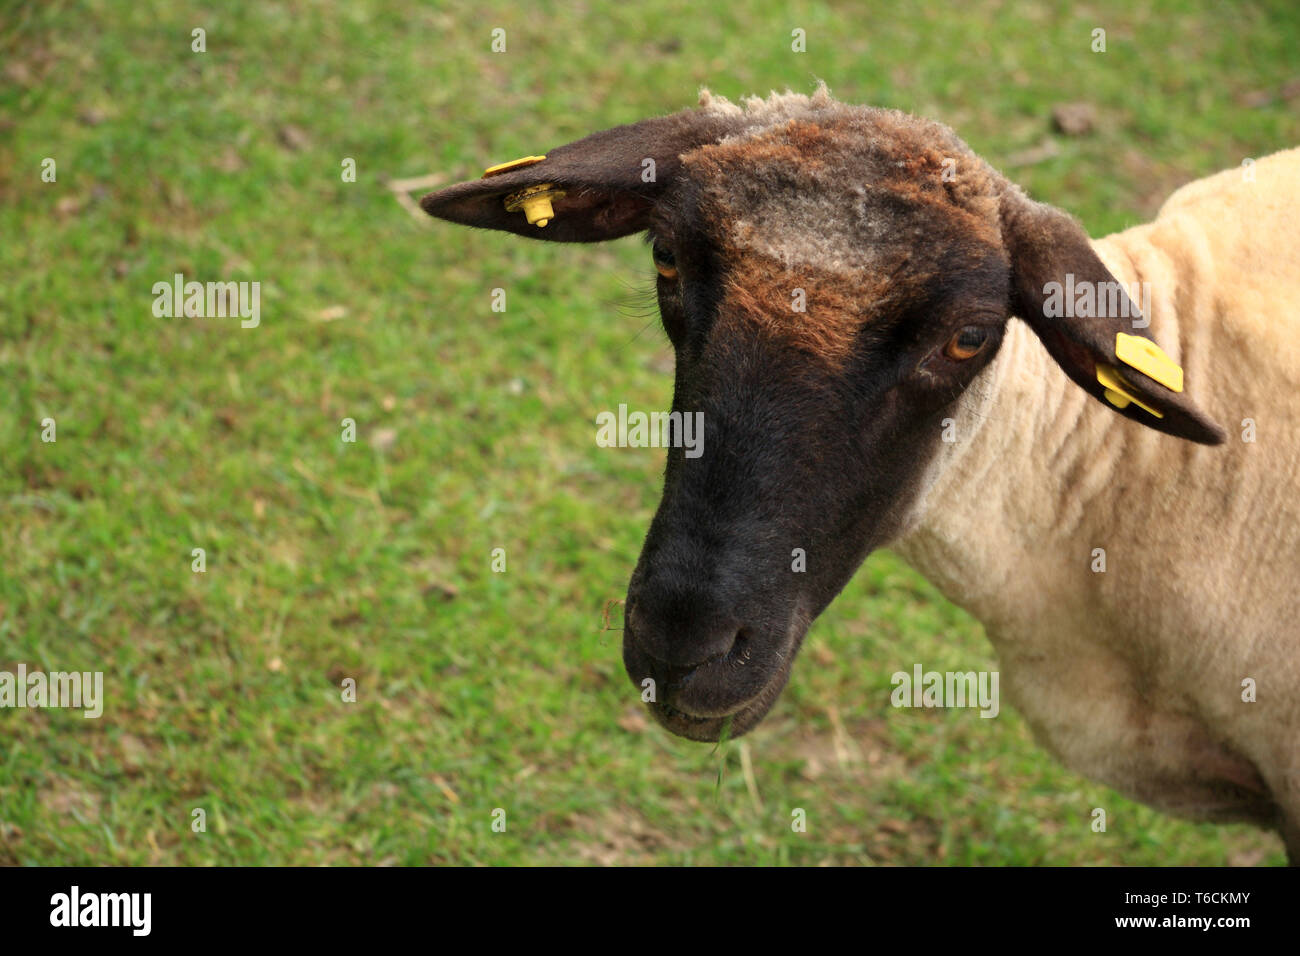 Les jeunes moutons face noire Banque D'Images